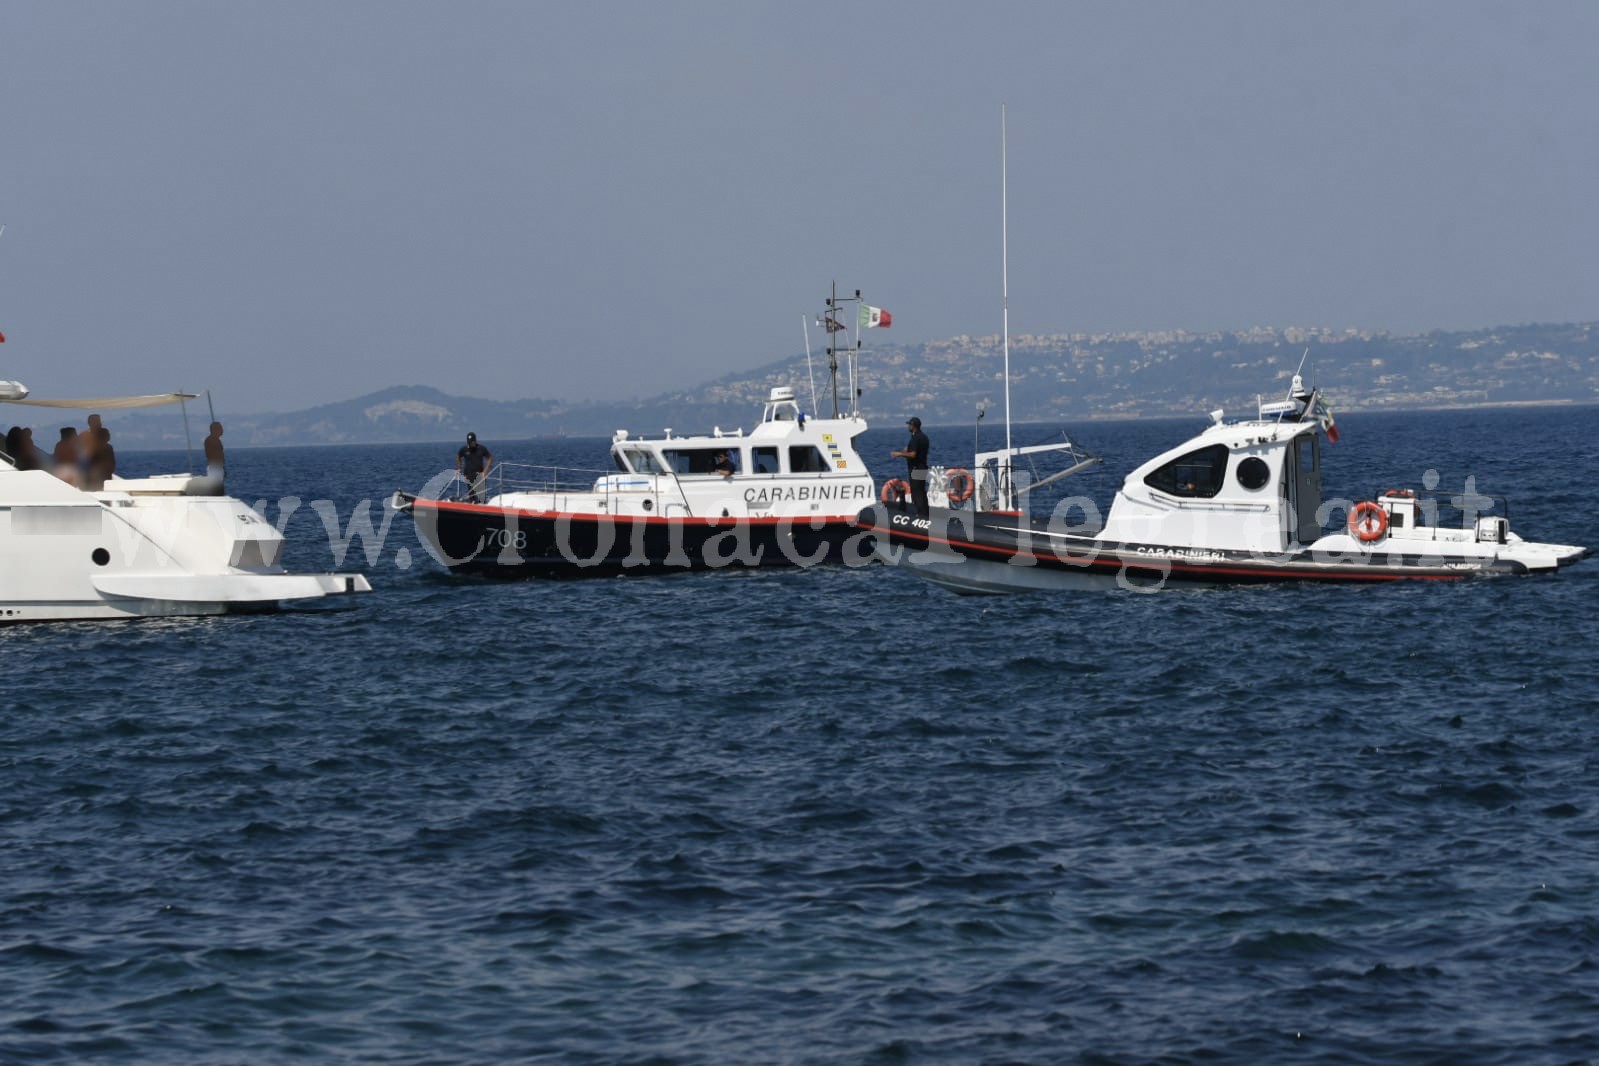 Controlli in mare, nel mirino pesca illegale e natanti scorretti: 31 sanzioni